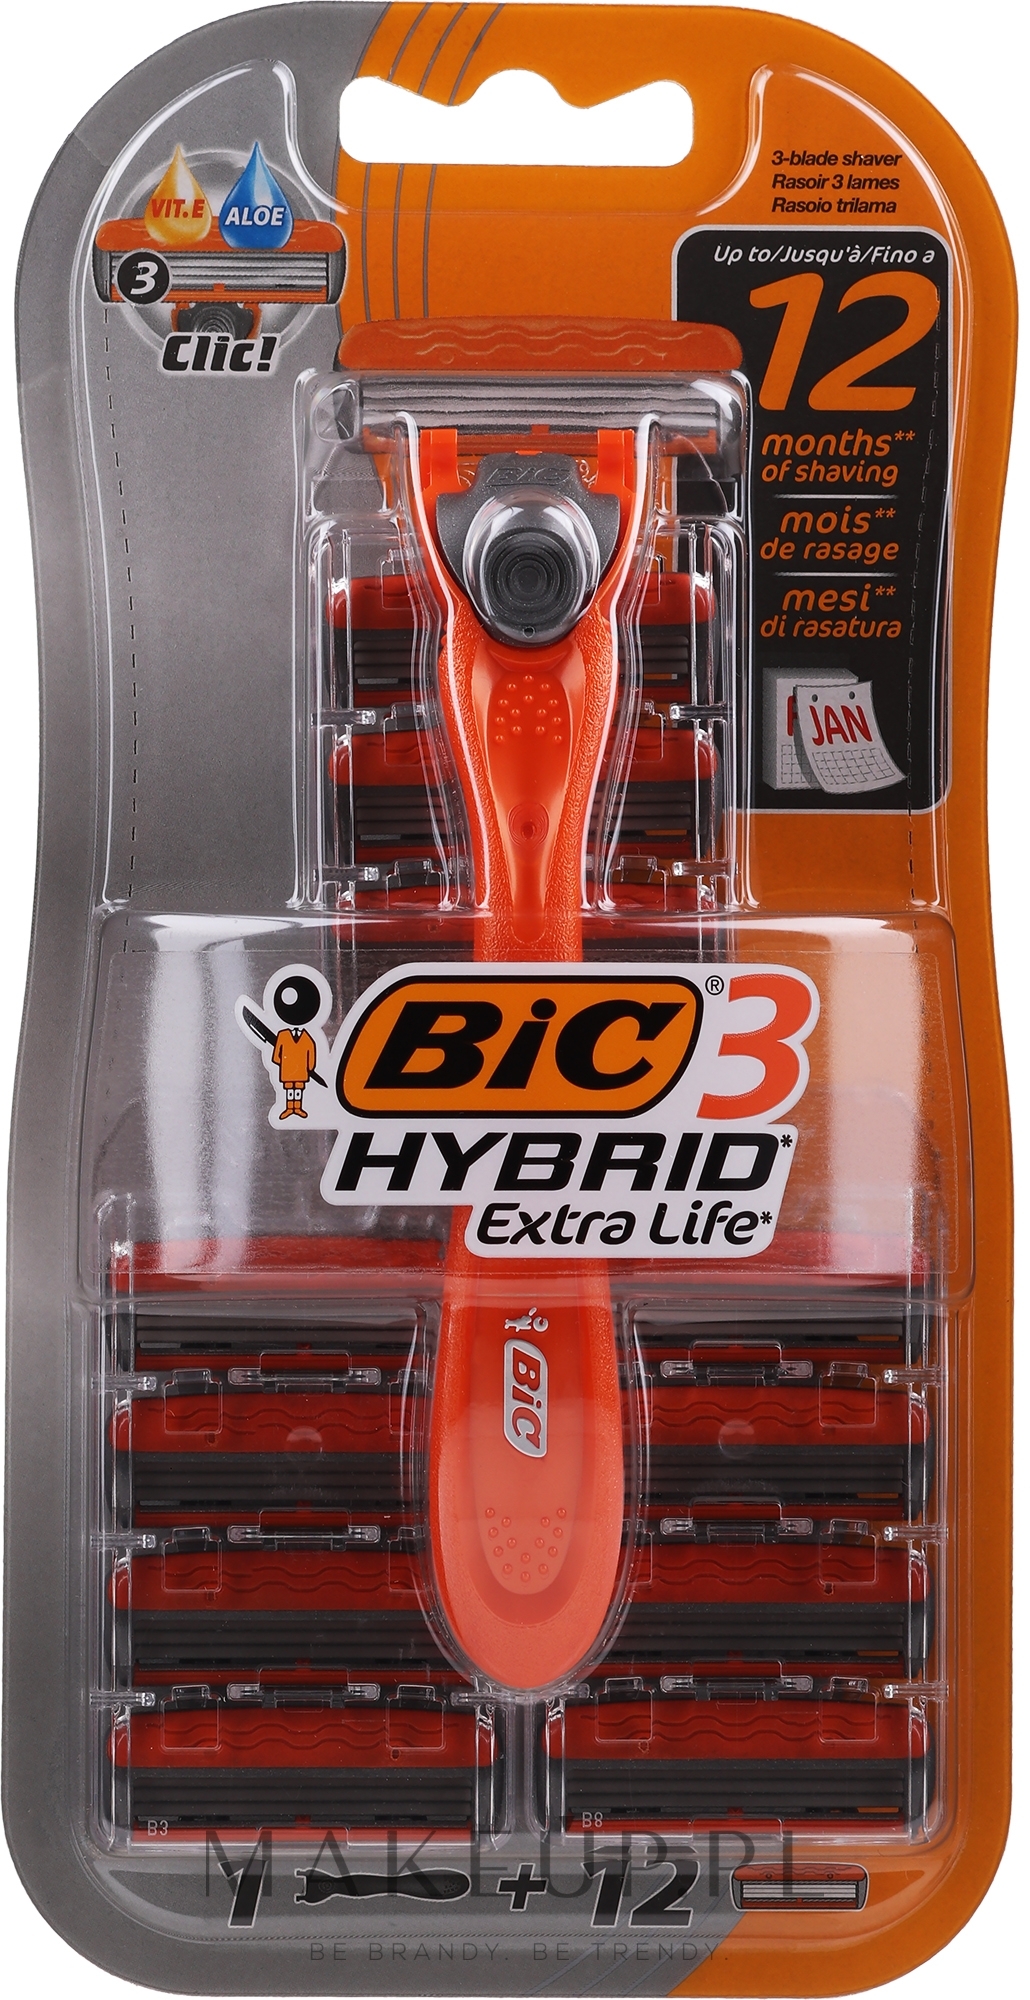 Maszynka do golenia z 12 wymiennymi wkładami - Bic 3 Hybrid Extra Life — Zdjęcie 12 szt.